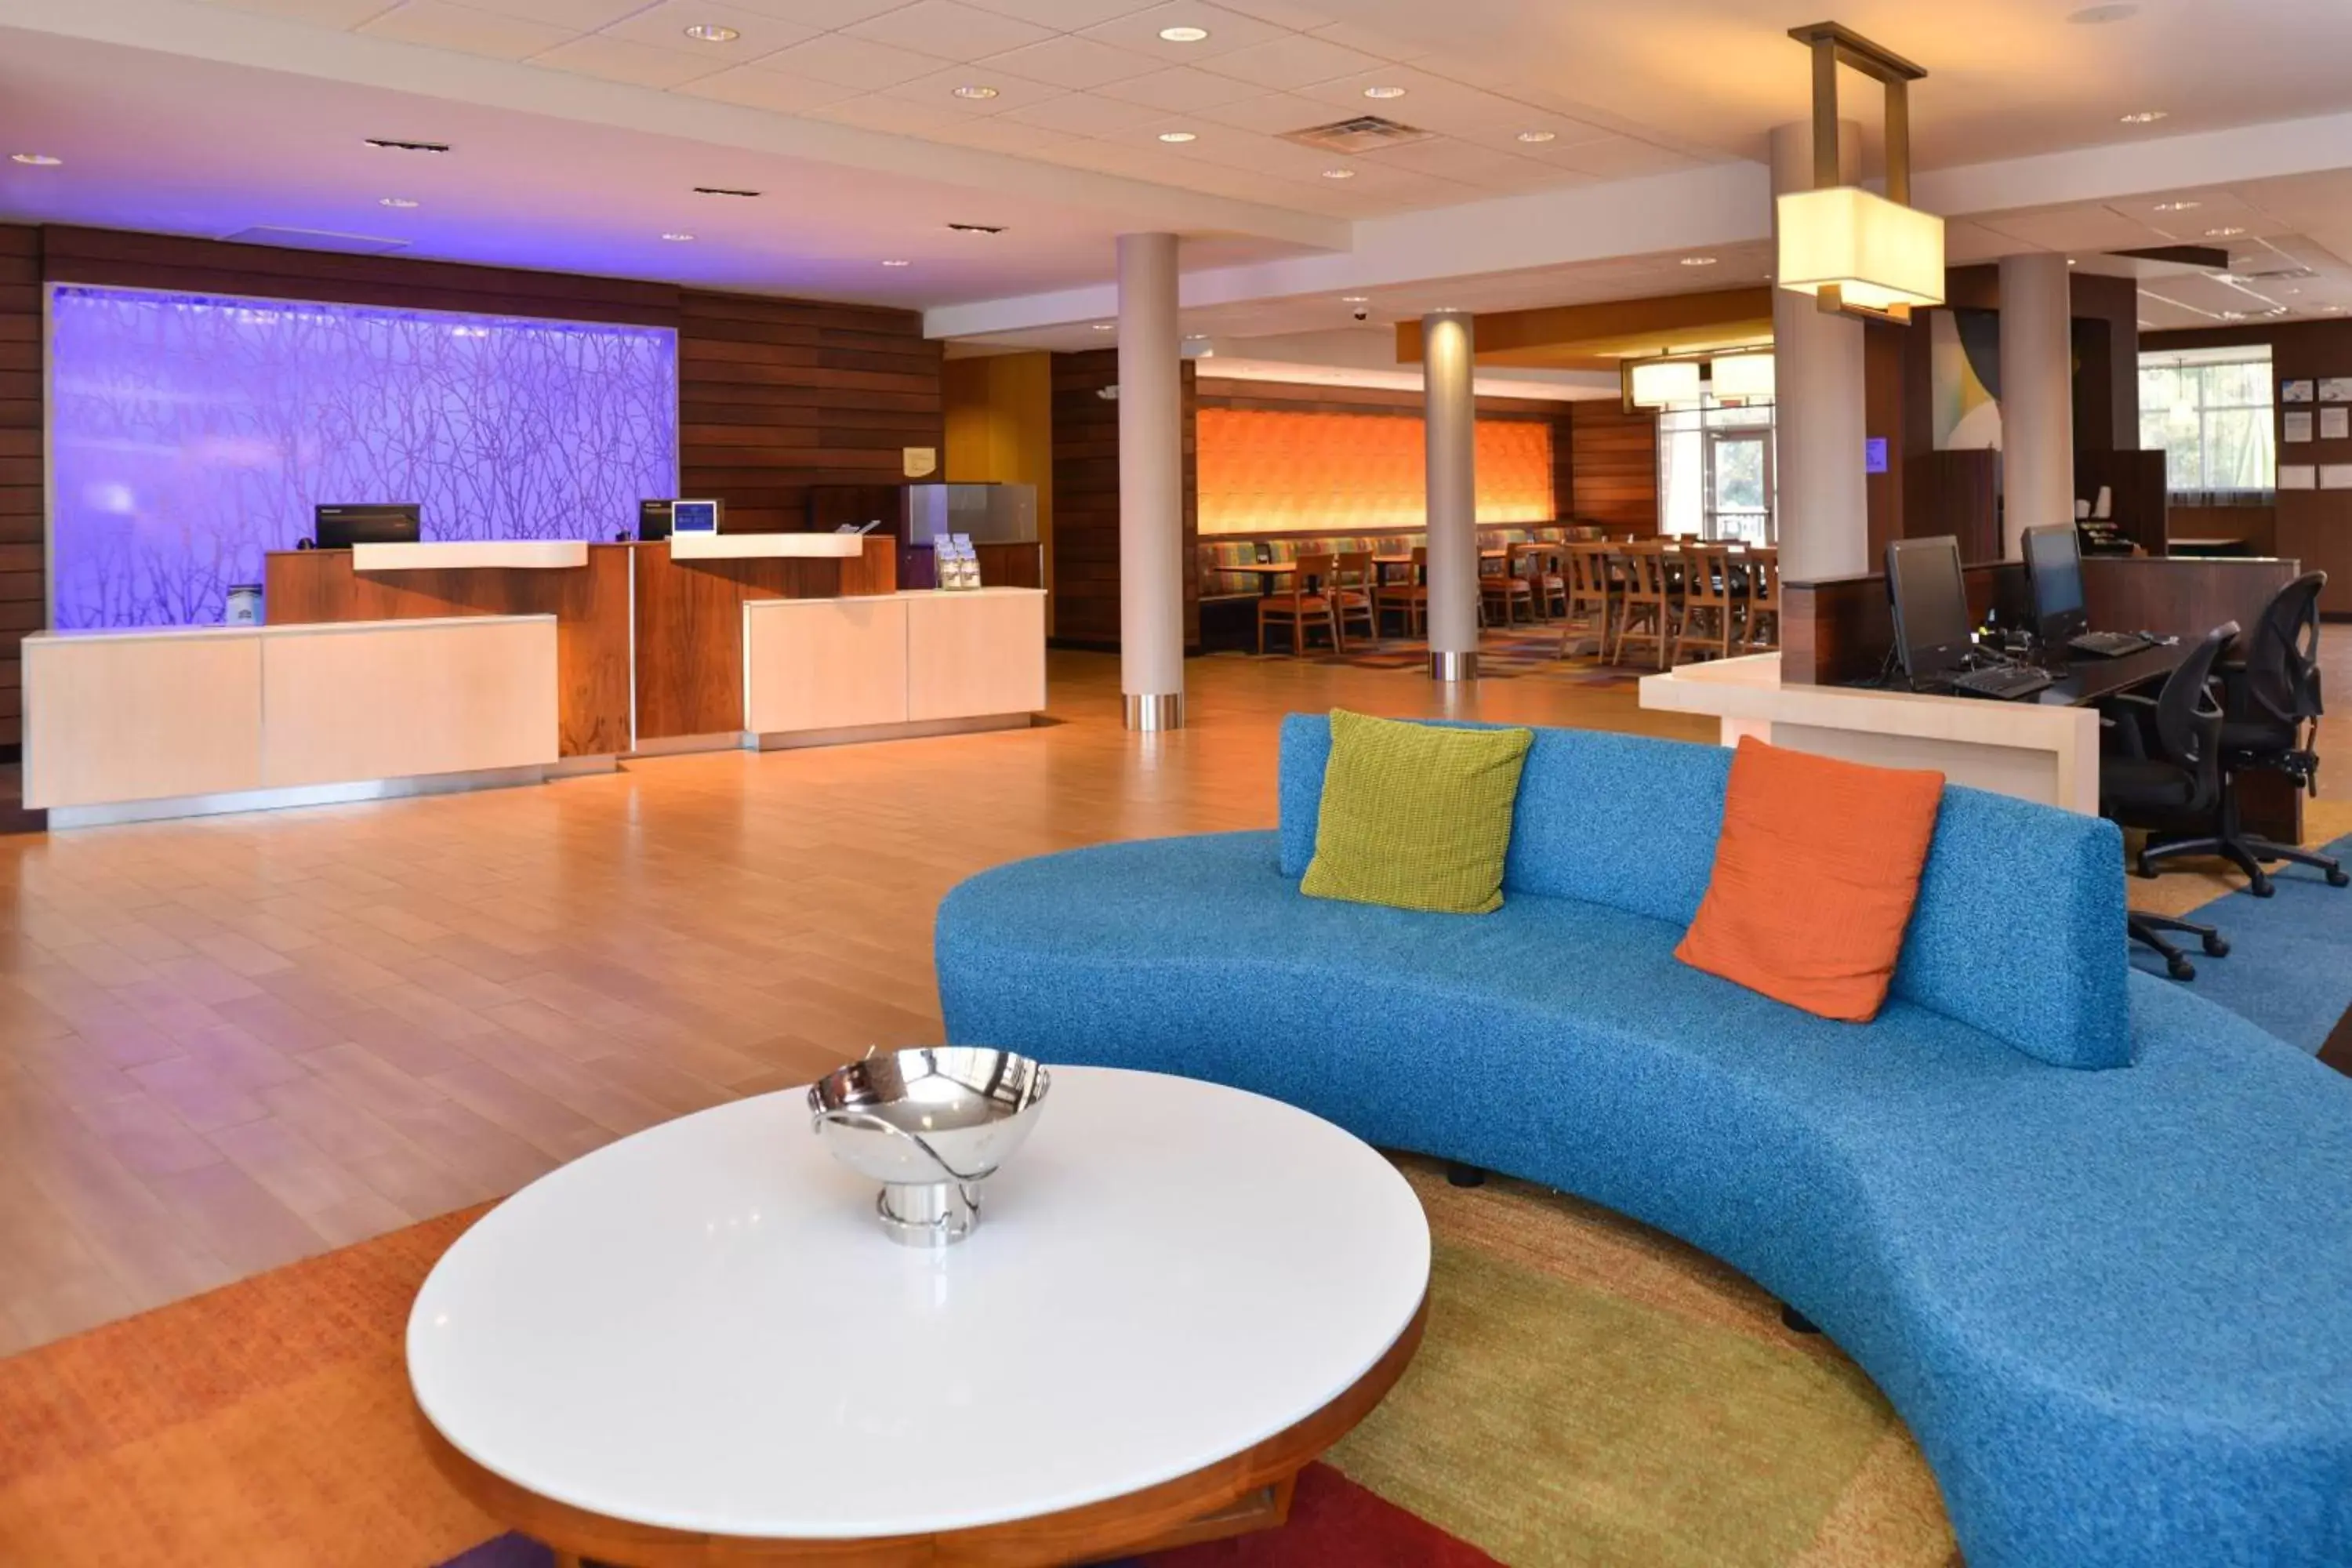 Lobby or reception, Lobby/Reception in Fairfield Inn and Suites by Marriott Calhoun